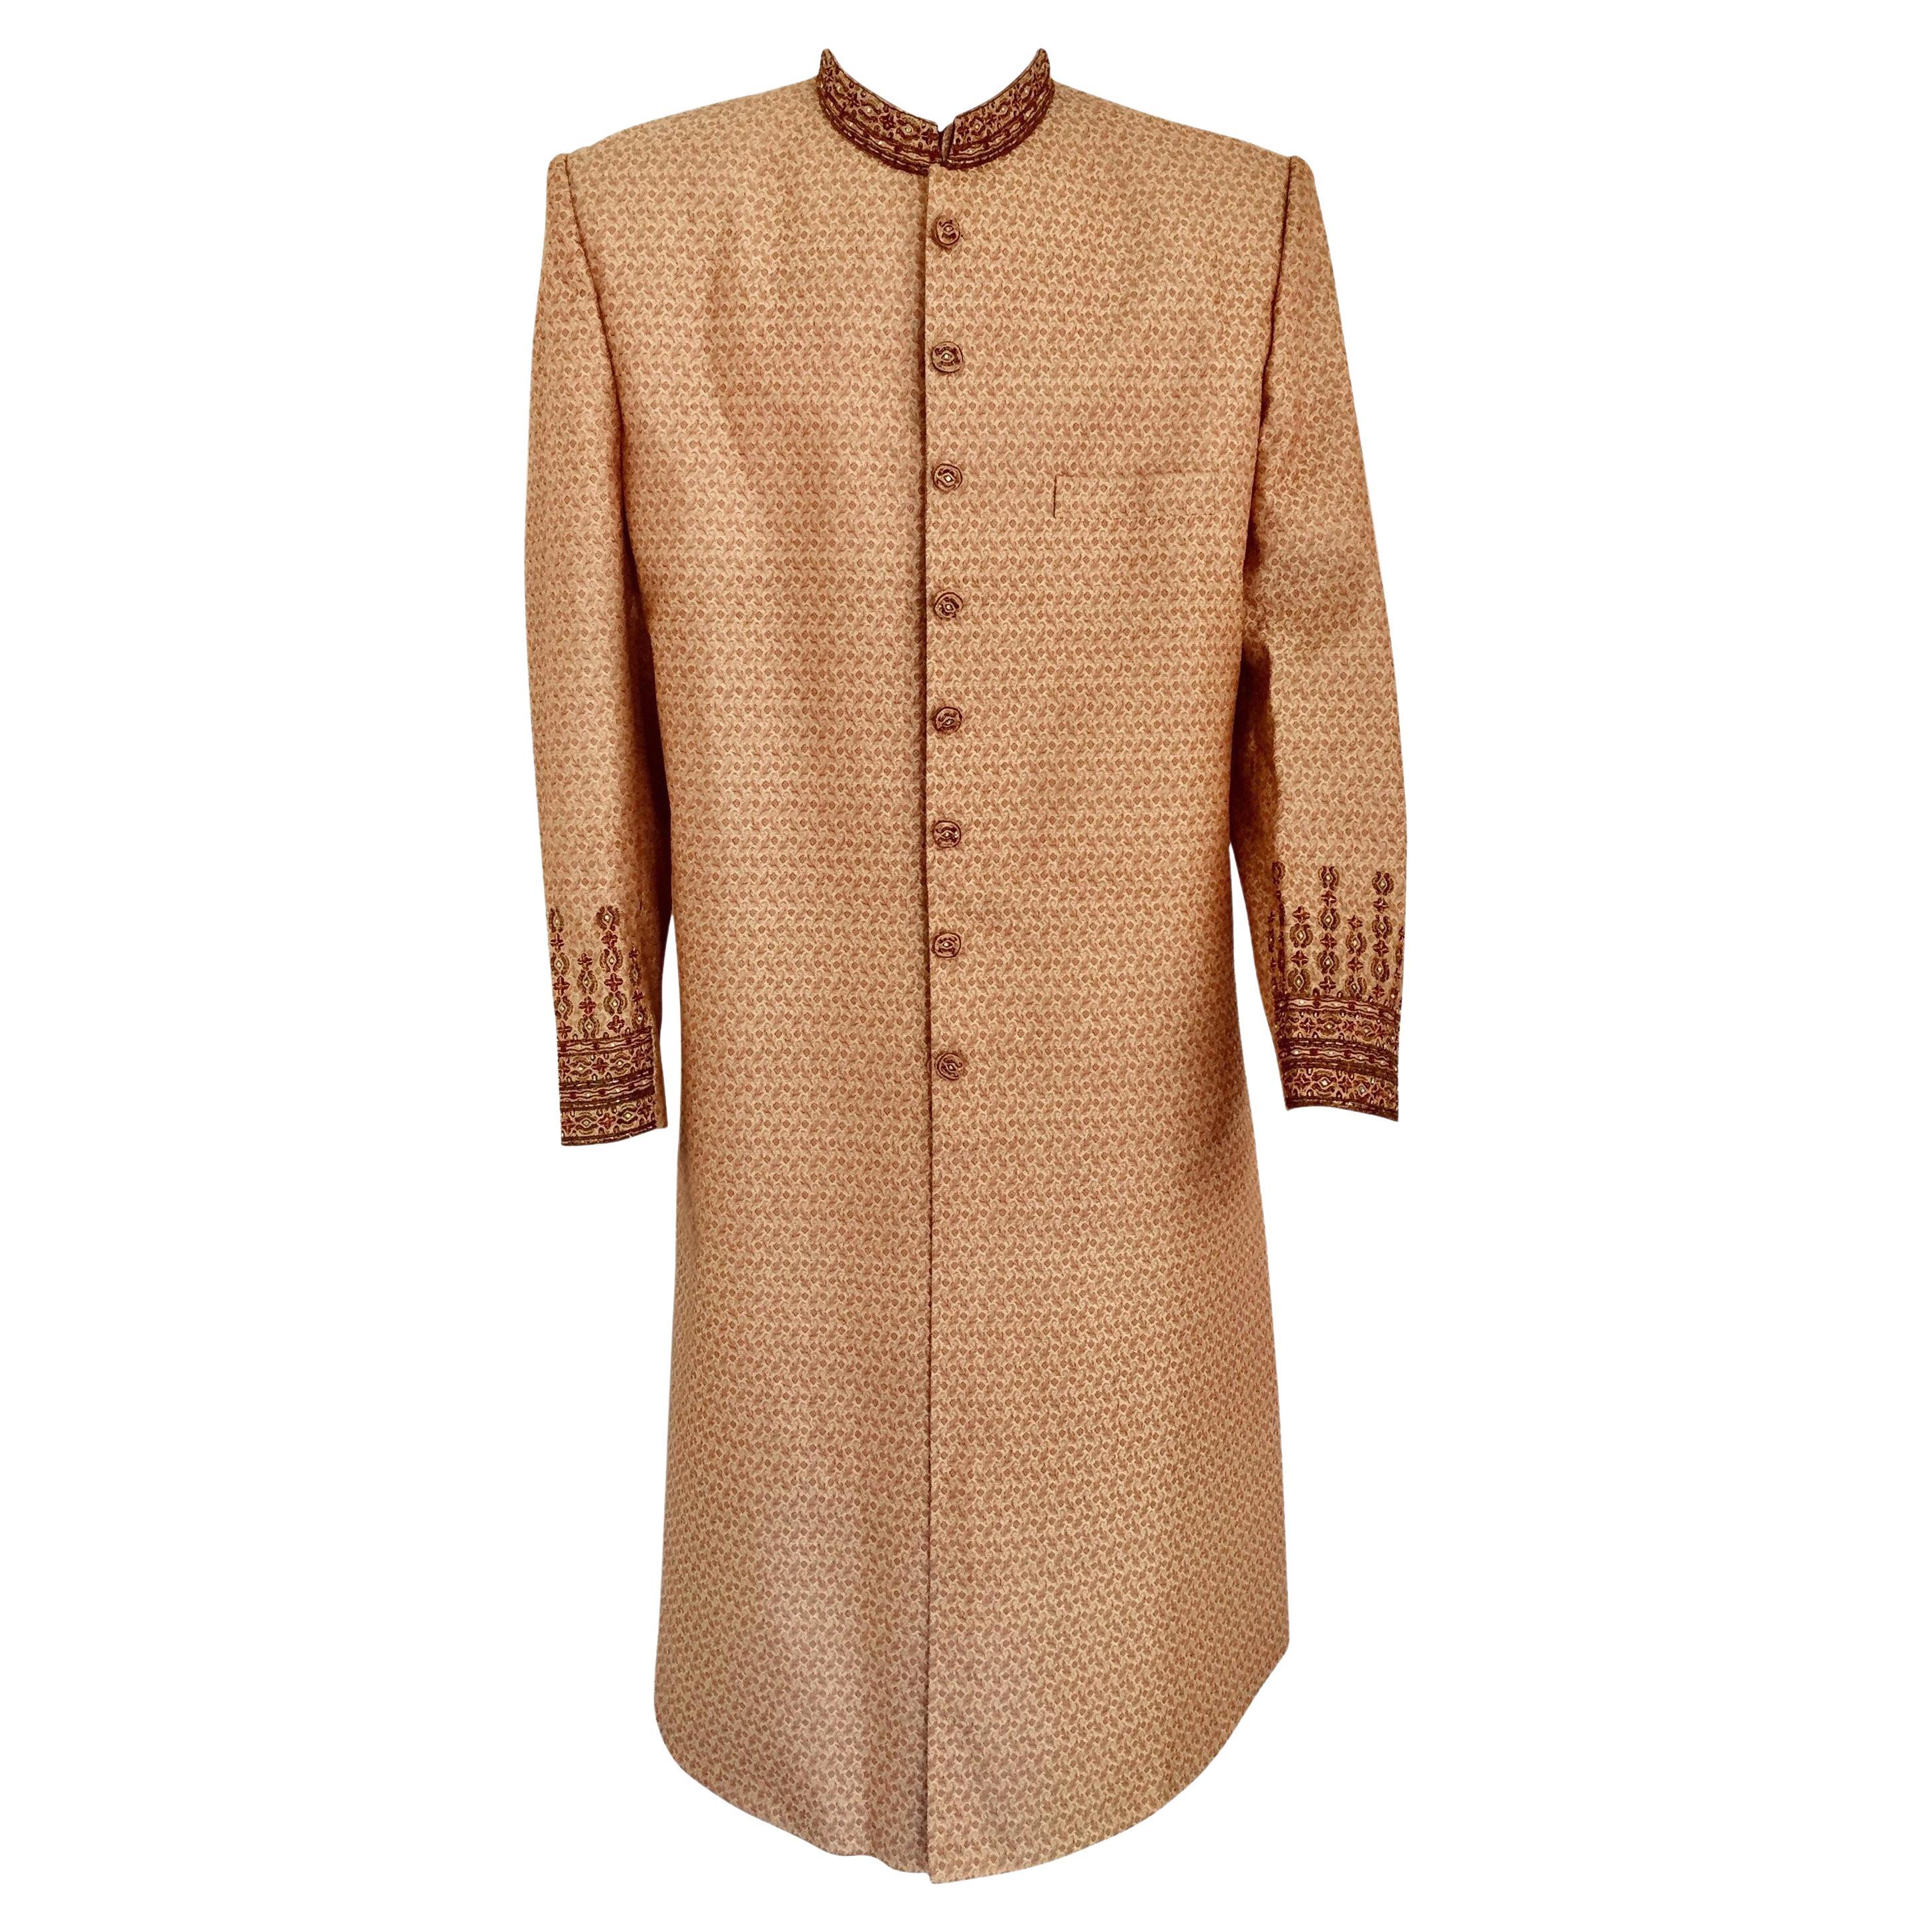 Gold Brocade Gentleman Indian Wedding or Party Maharaja Sultan Tuxedo Coat For Sale